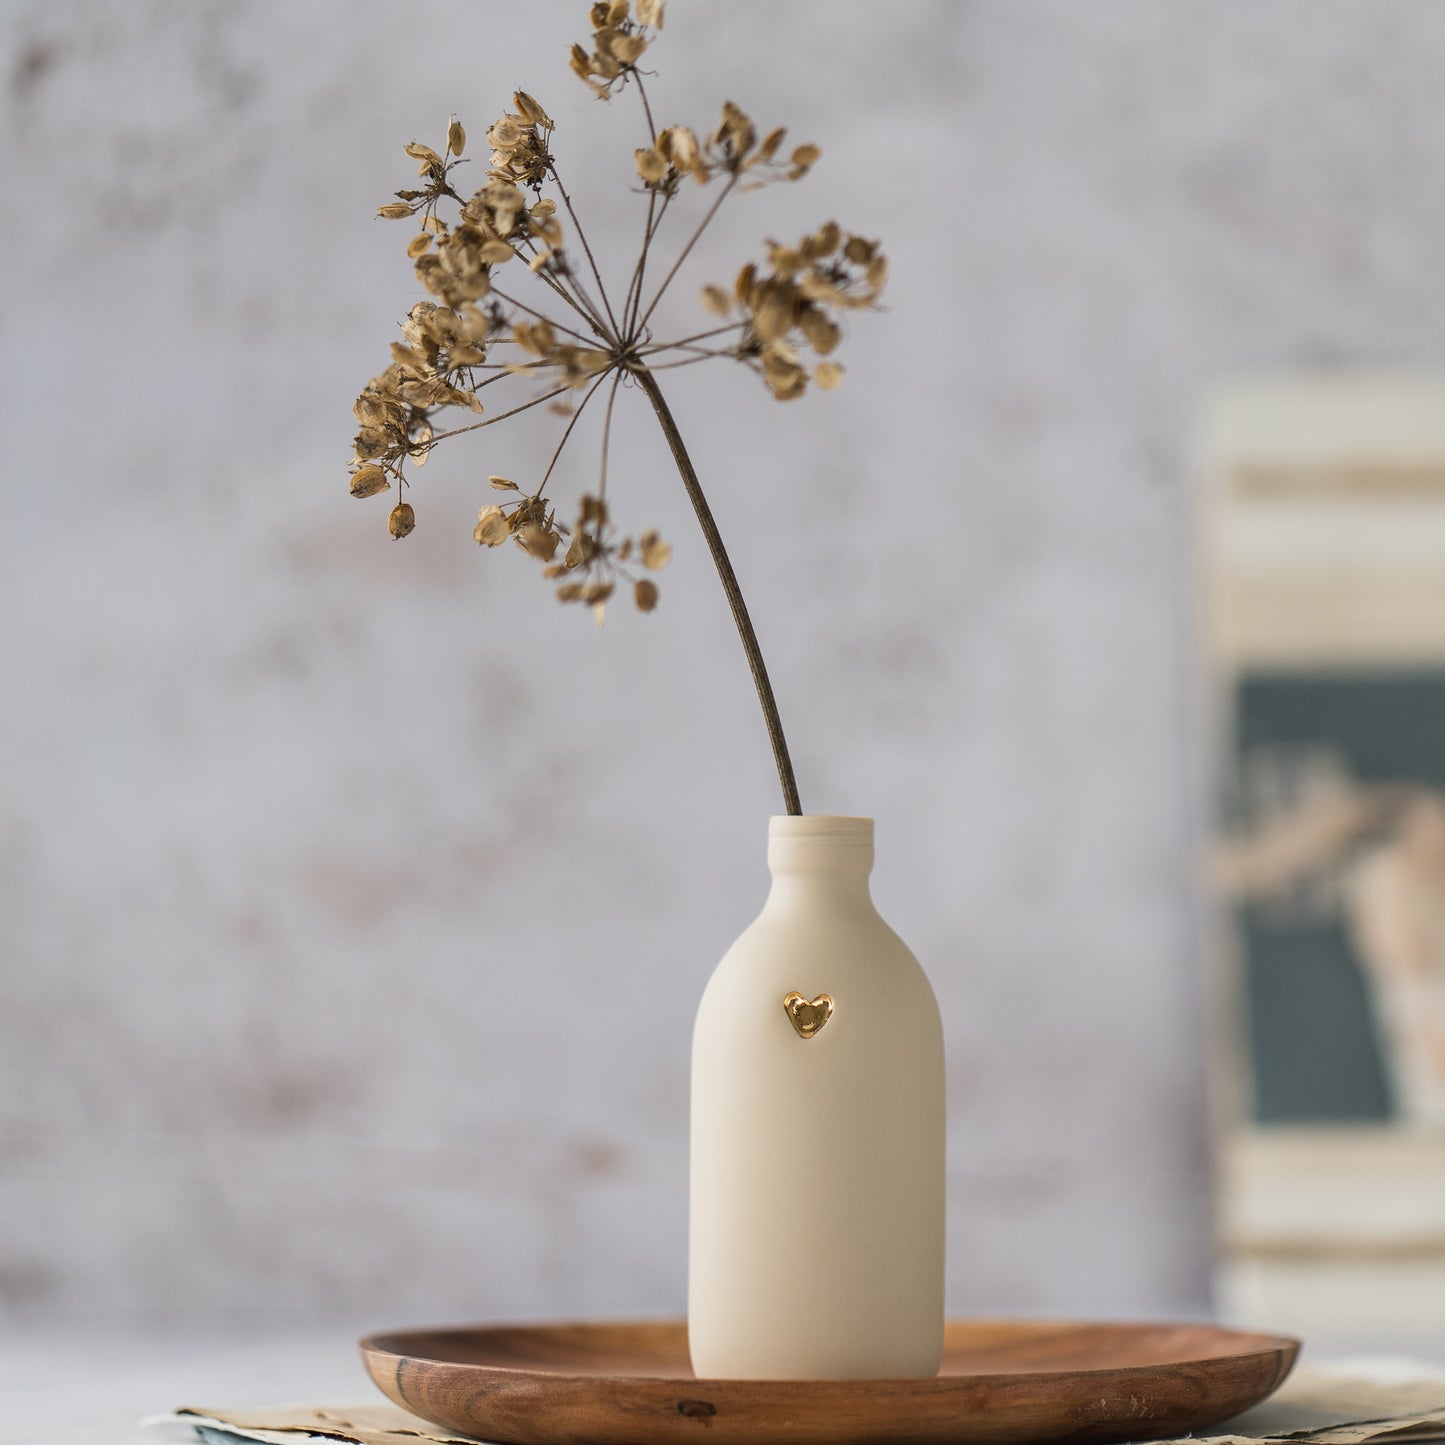 Pastel Bottle Vases With A Gold Embossed Heart | Summer Vase | Flower Vase | Porcelain